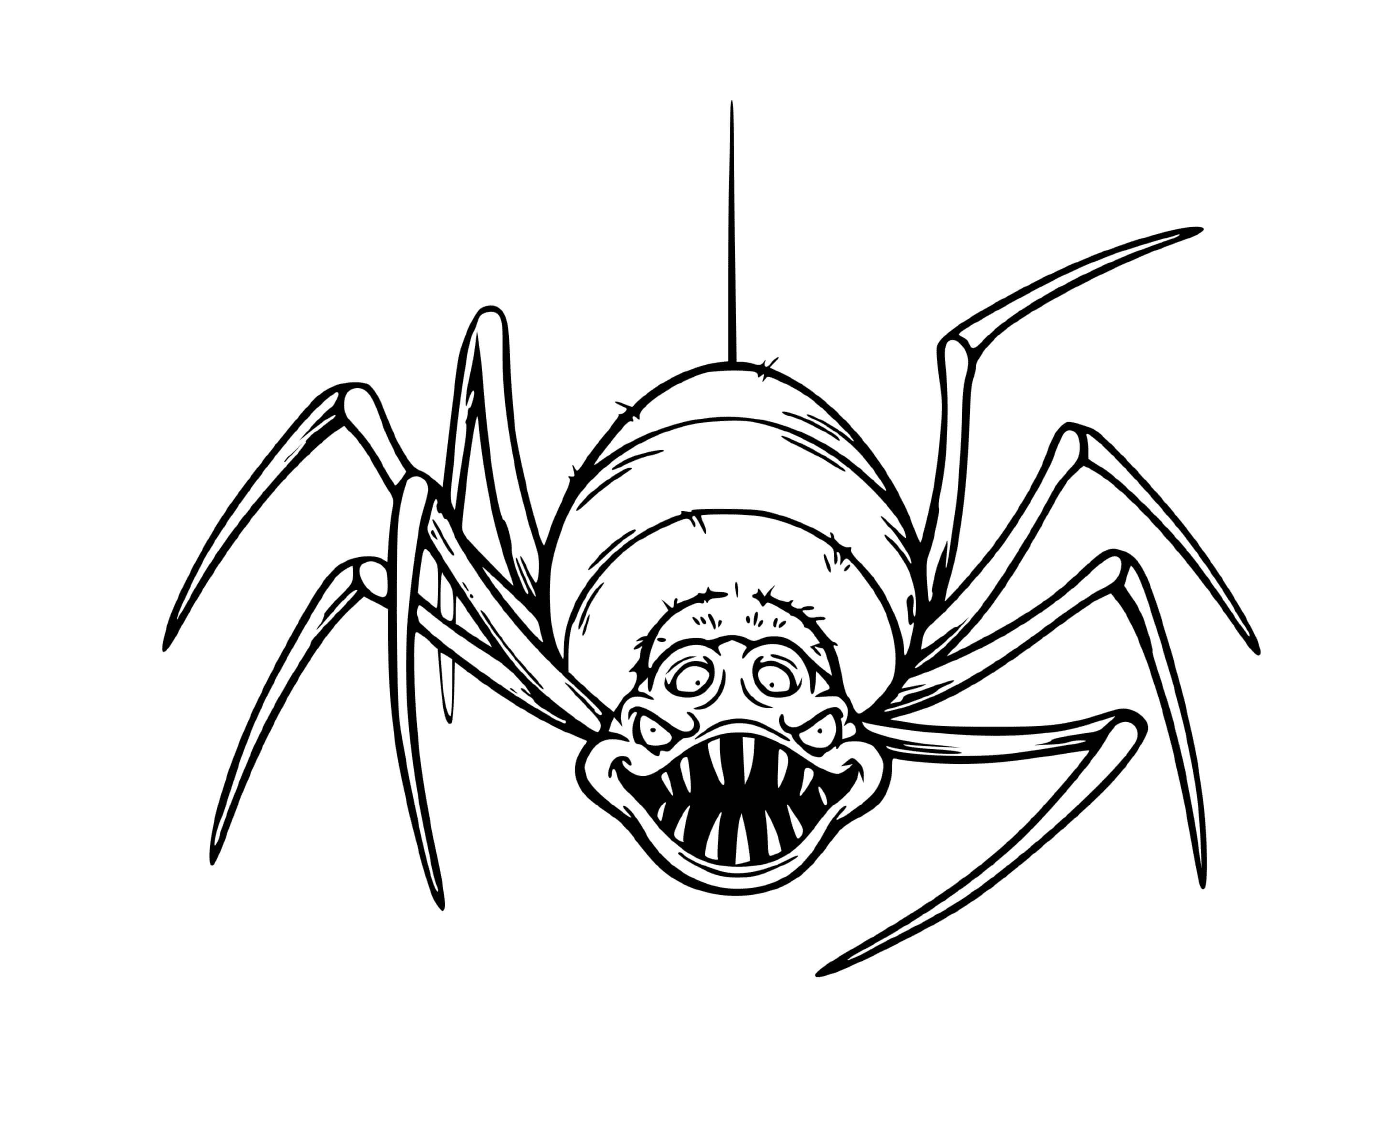  Eine schreckliche Spinne, die sehr beängstigend ist 